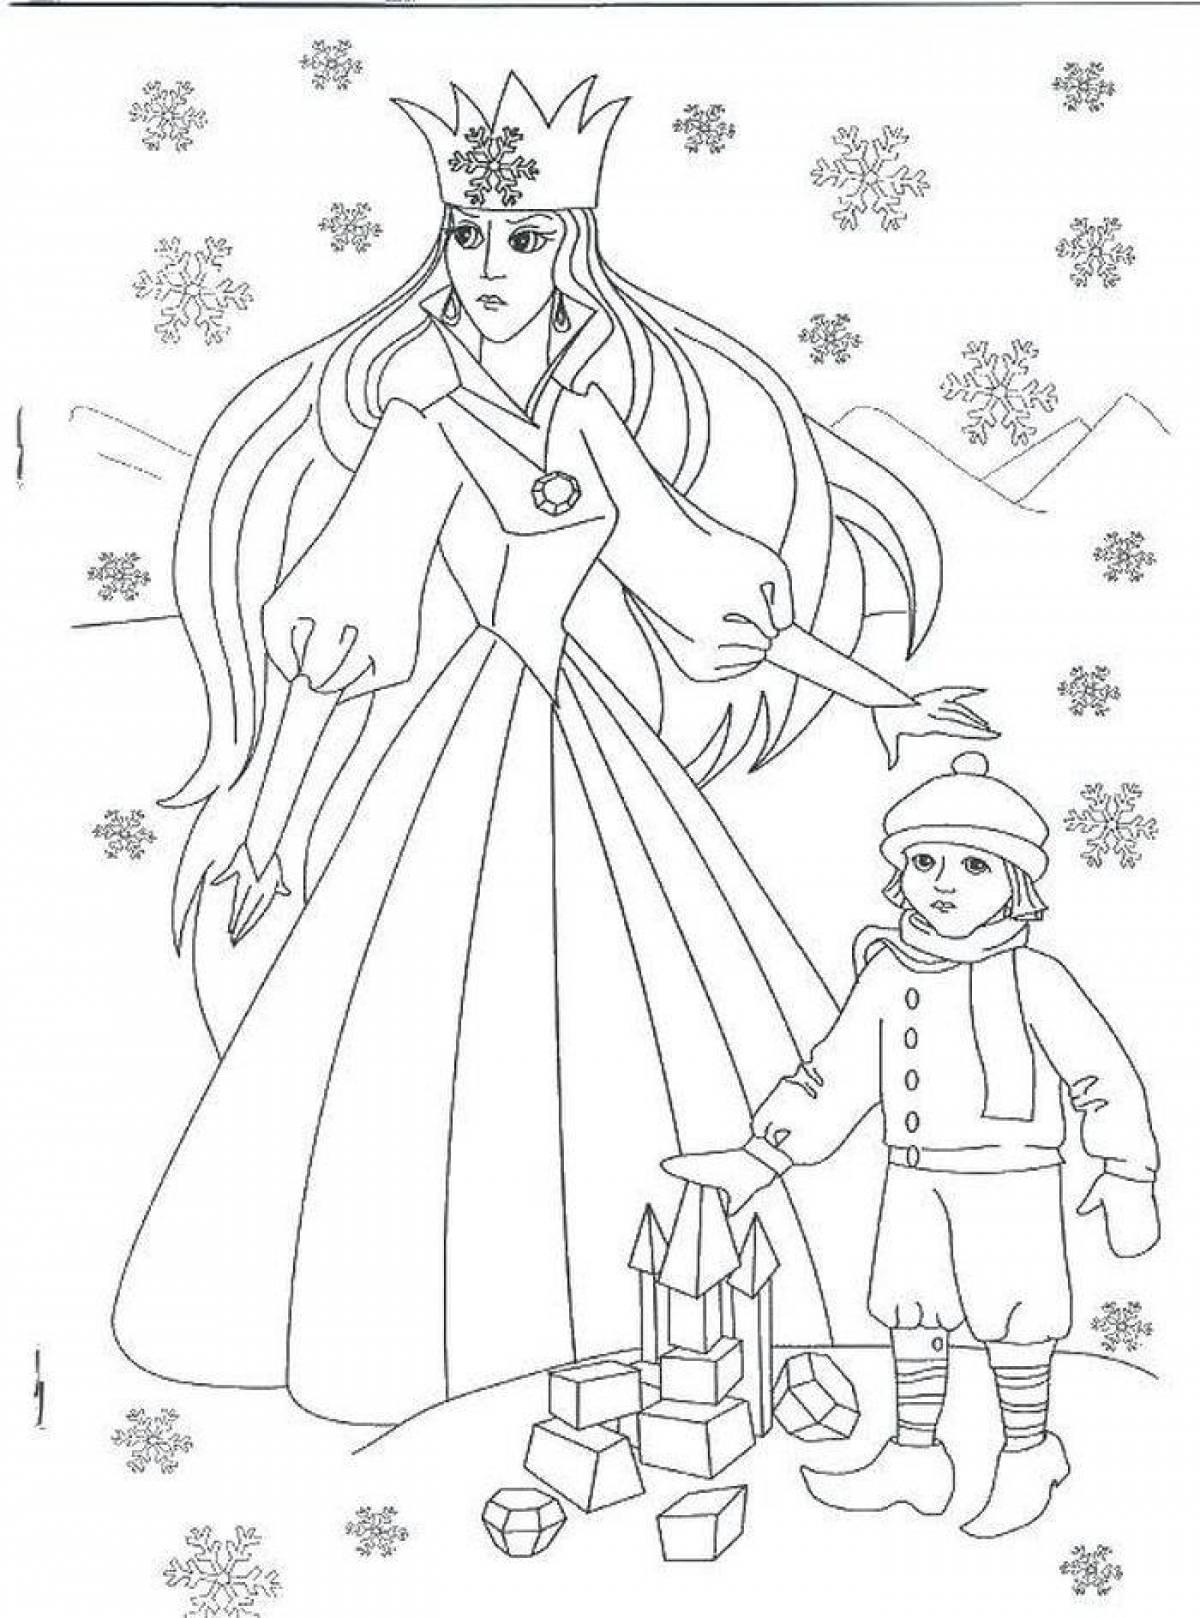 Нарисовать иллюстрацию к сказке снежная королева. Раскраска снежной королевы из сказки Снежная Королева. Снежная Королева Андерсен раскраска. Снежная Королева рисунок карандашом. Раскраска Королева.